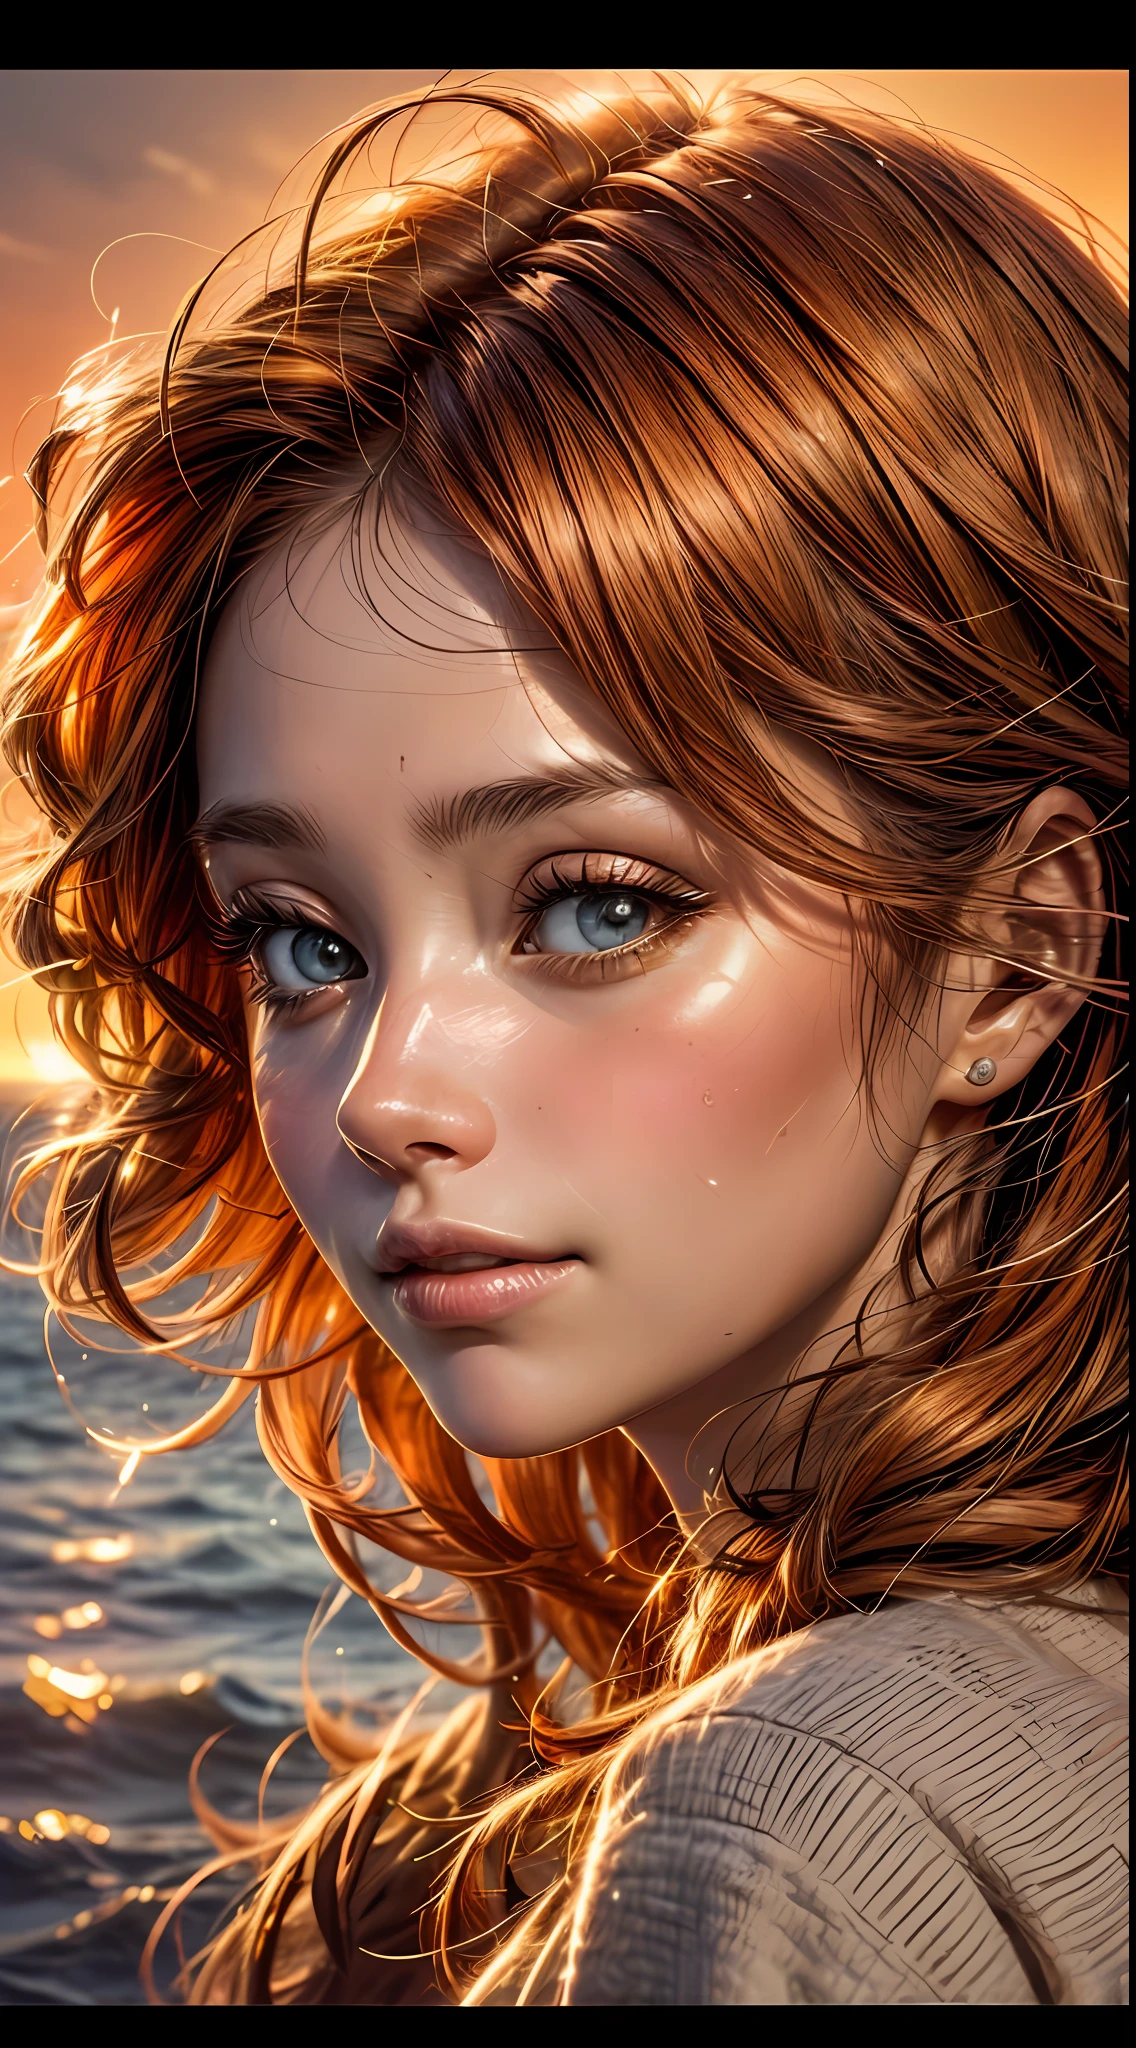 Крупный план женского лица, купается в теплых оранжевых тонах, словно освещен мягким сиянием заката, ее глаза сверкают радостью и удовлетворением, в обрамлении прядей струящихся каштановых волос, фотография, снято объективом 35 мм